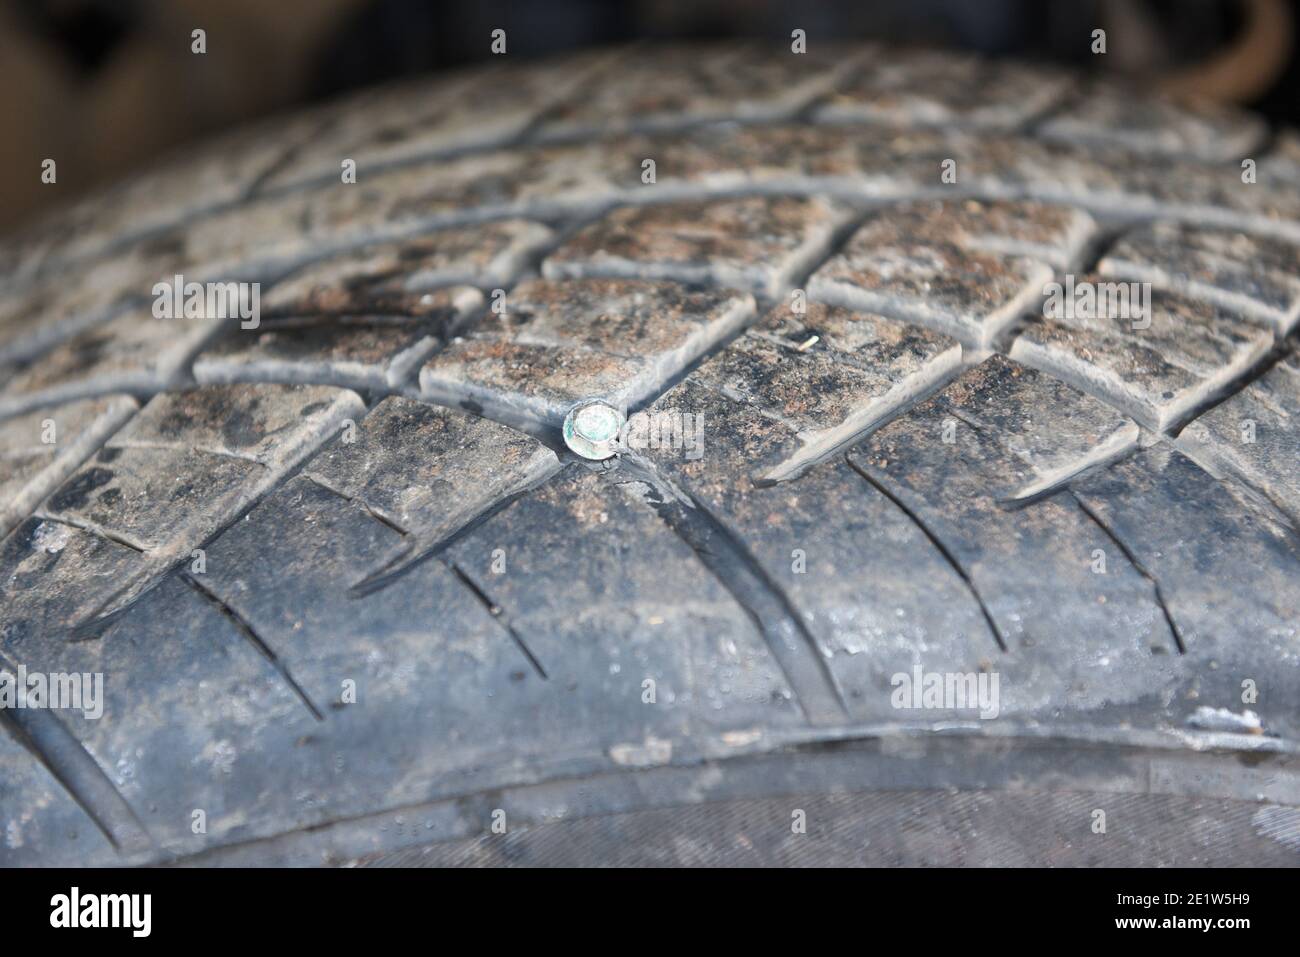 Autoreifen Nagel in den gebrochenen Reifen eingebettet, Schrauben Sie in  den schwarzen Reifen. Beschädigte Reifen Probleme und Lösungen Konzept  Stockfotografie - Alamy